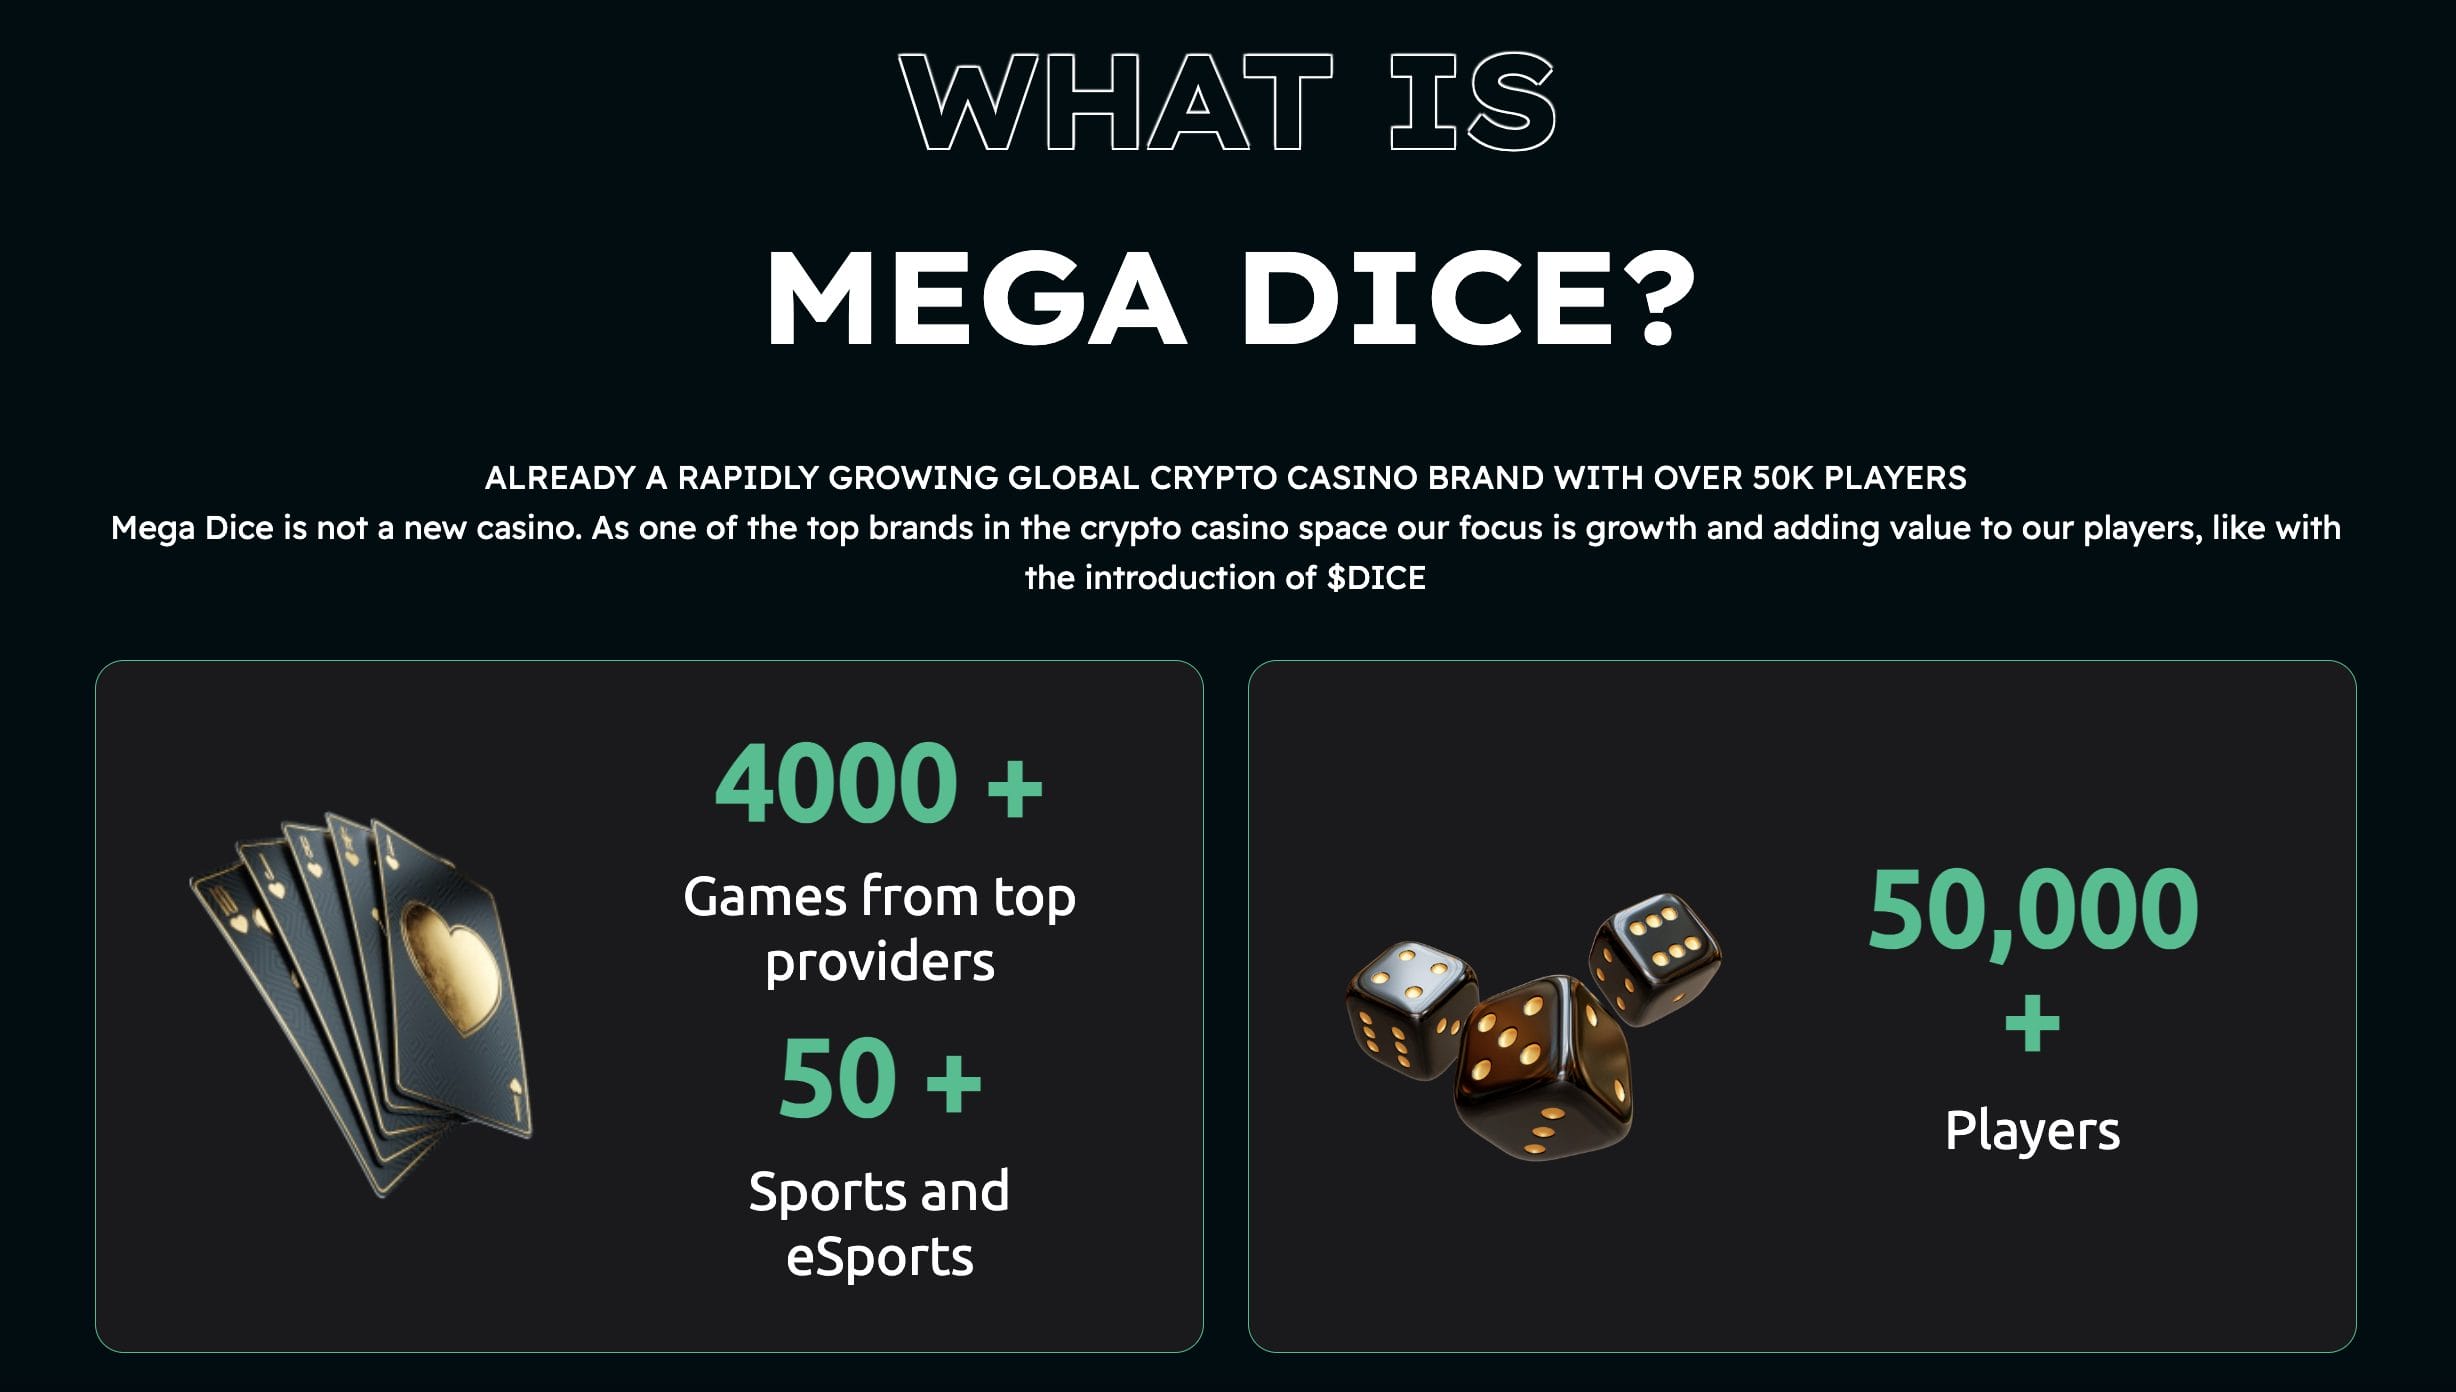 Mega Dice Casino games